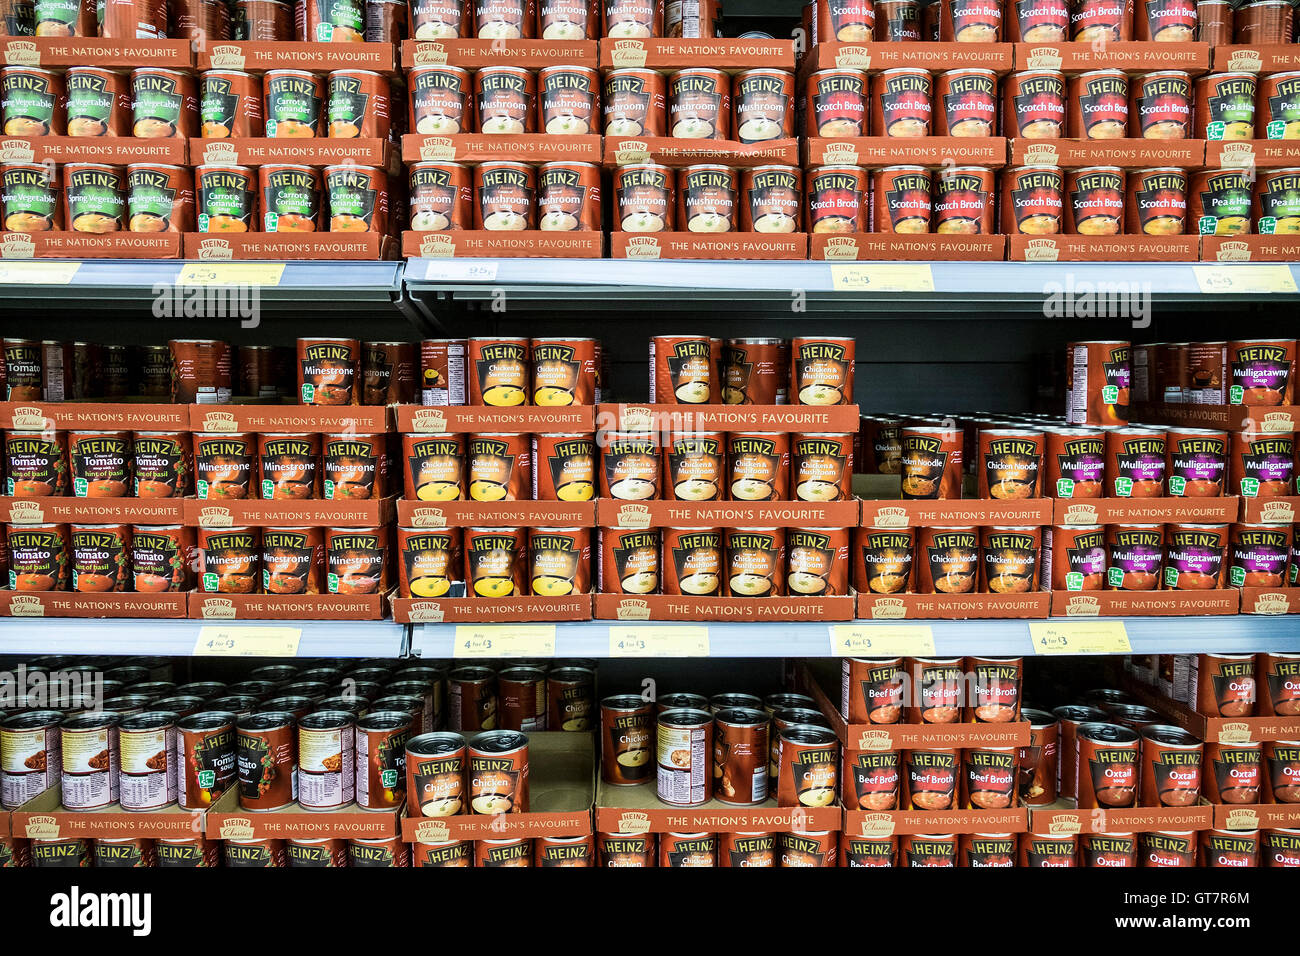 Différents types de soupes Heinz sur l'affichage dans un supermarché. Banque D'Images